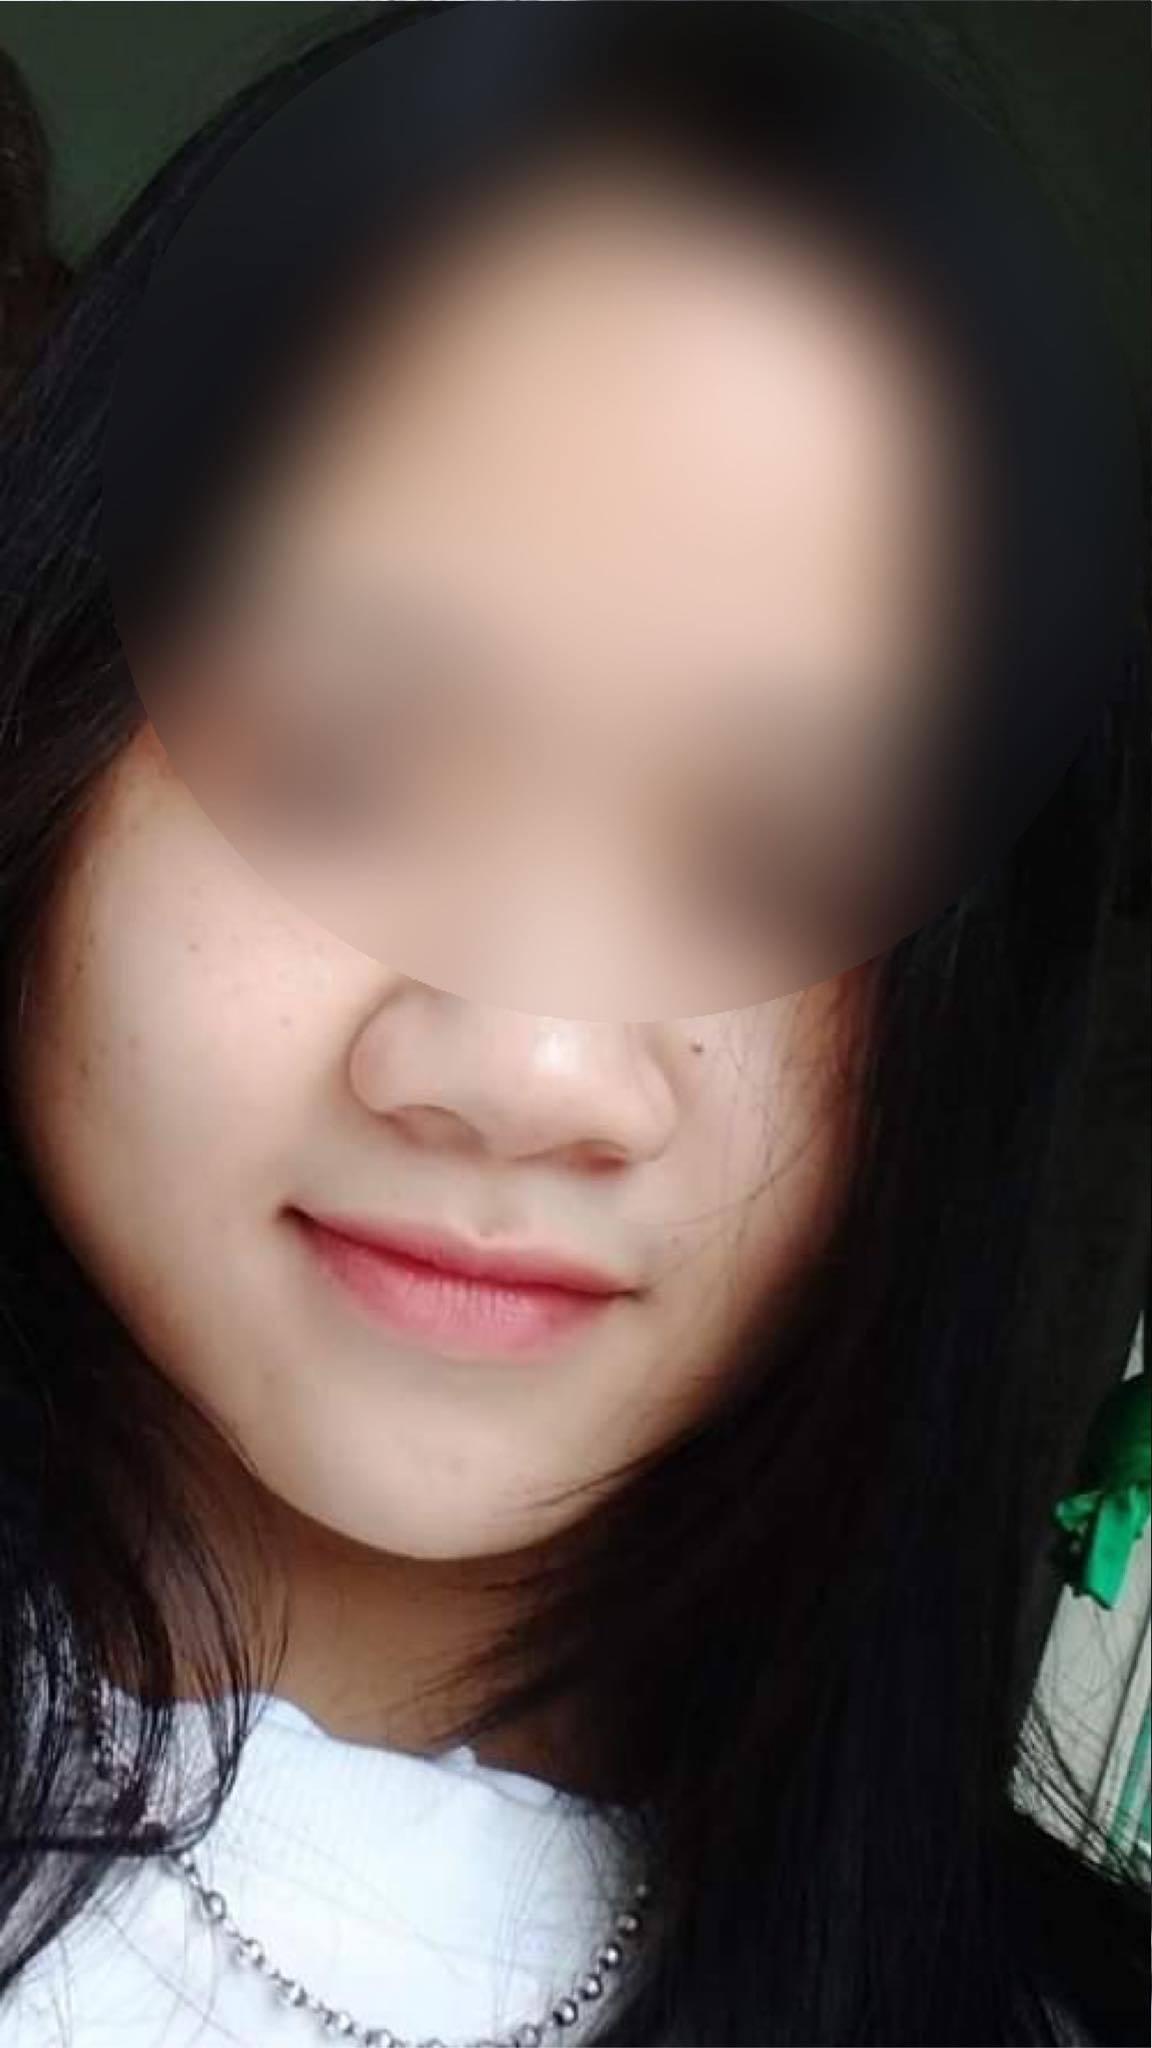 Nữ sinh mất tích sau cú sốc bạn trai cũ 'bóc phốt' trên Facebook